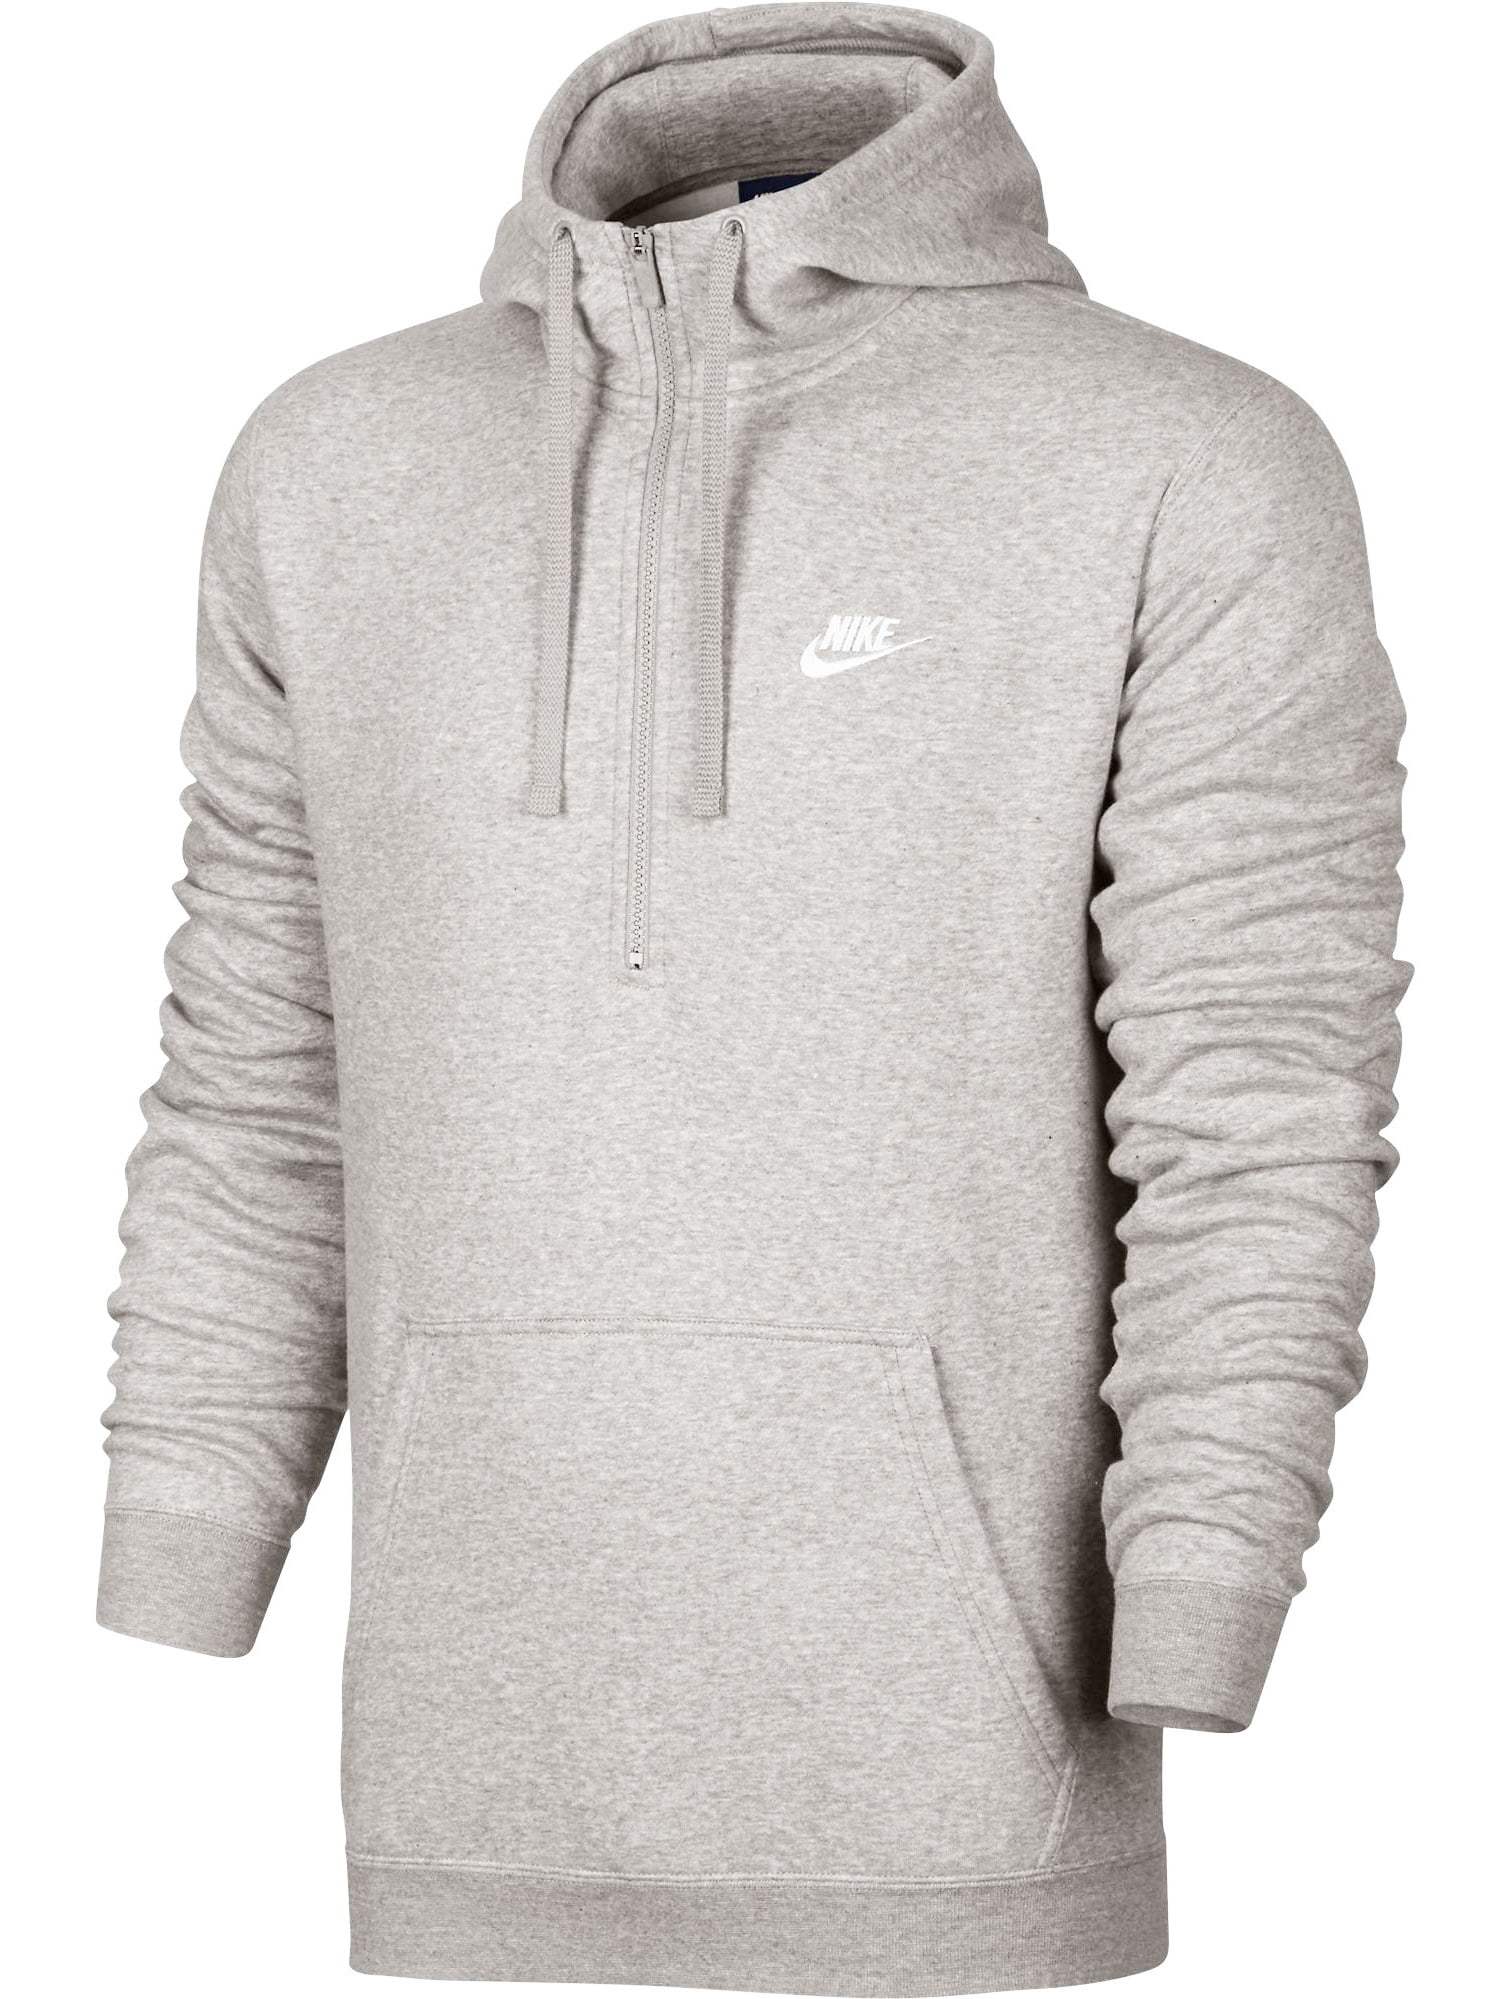 Nike - Nike Club Half Zip Longsleeve Men's Hoodie Grey/White 812519-063 ...